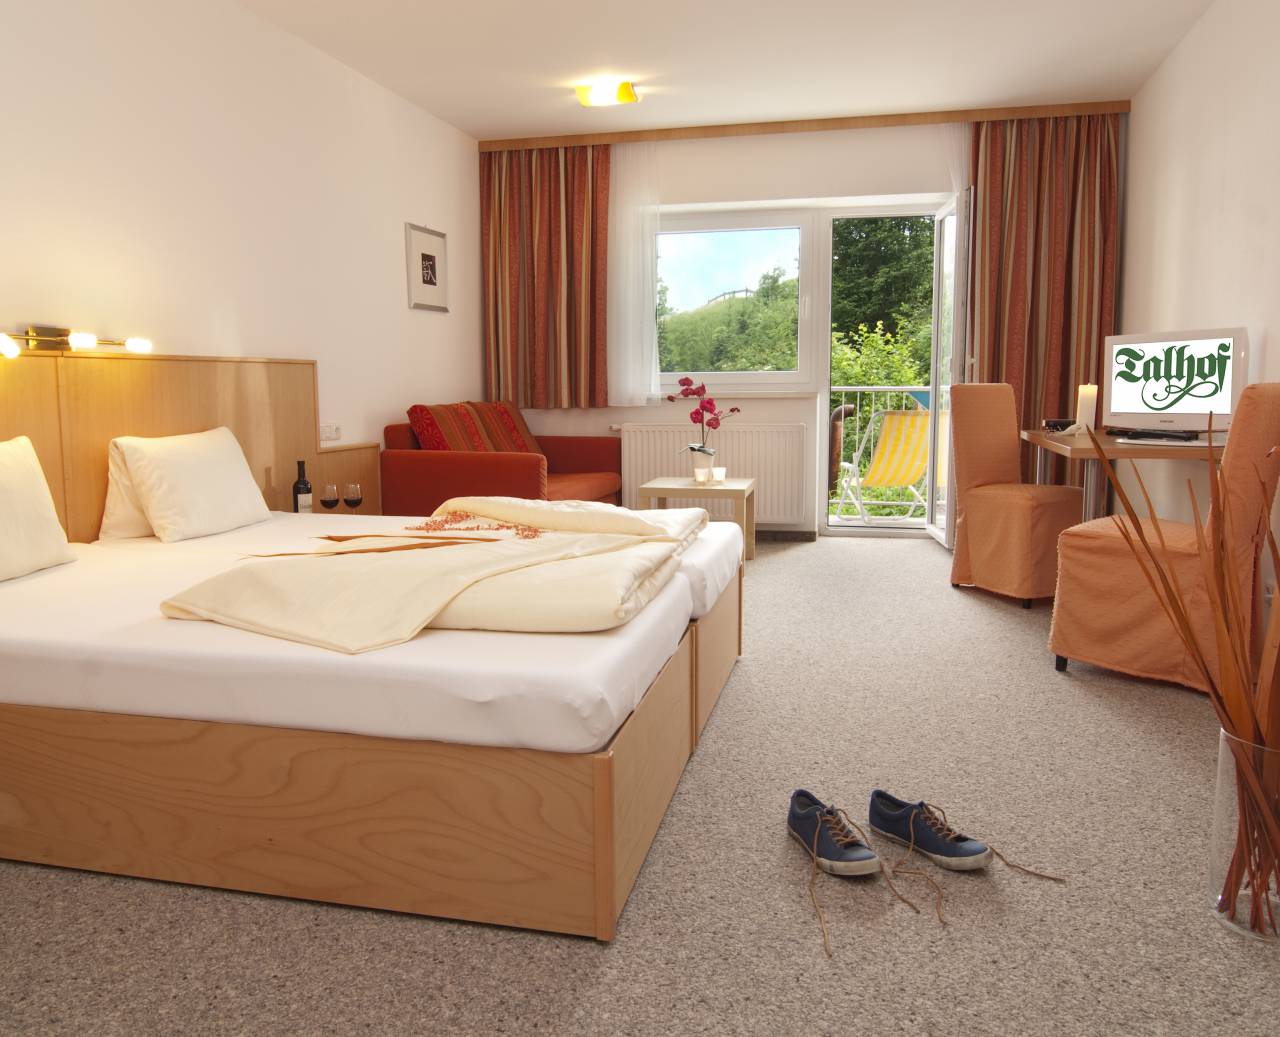 Hotelzimmer mit Doppelbett, Sitzgarnitur und Balkon mit Ausblick in die Natur